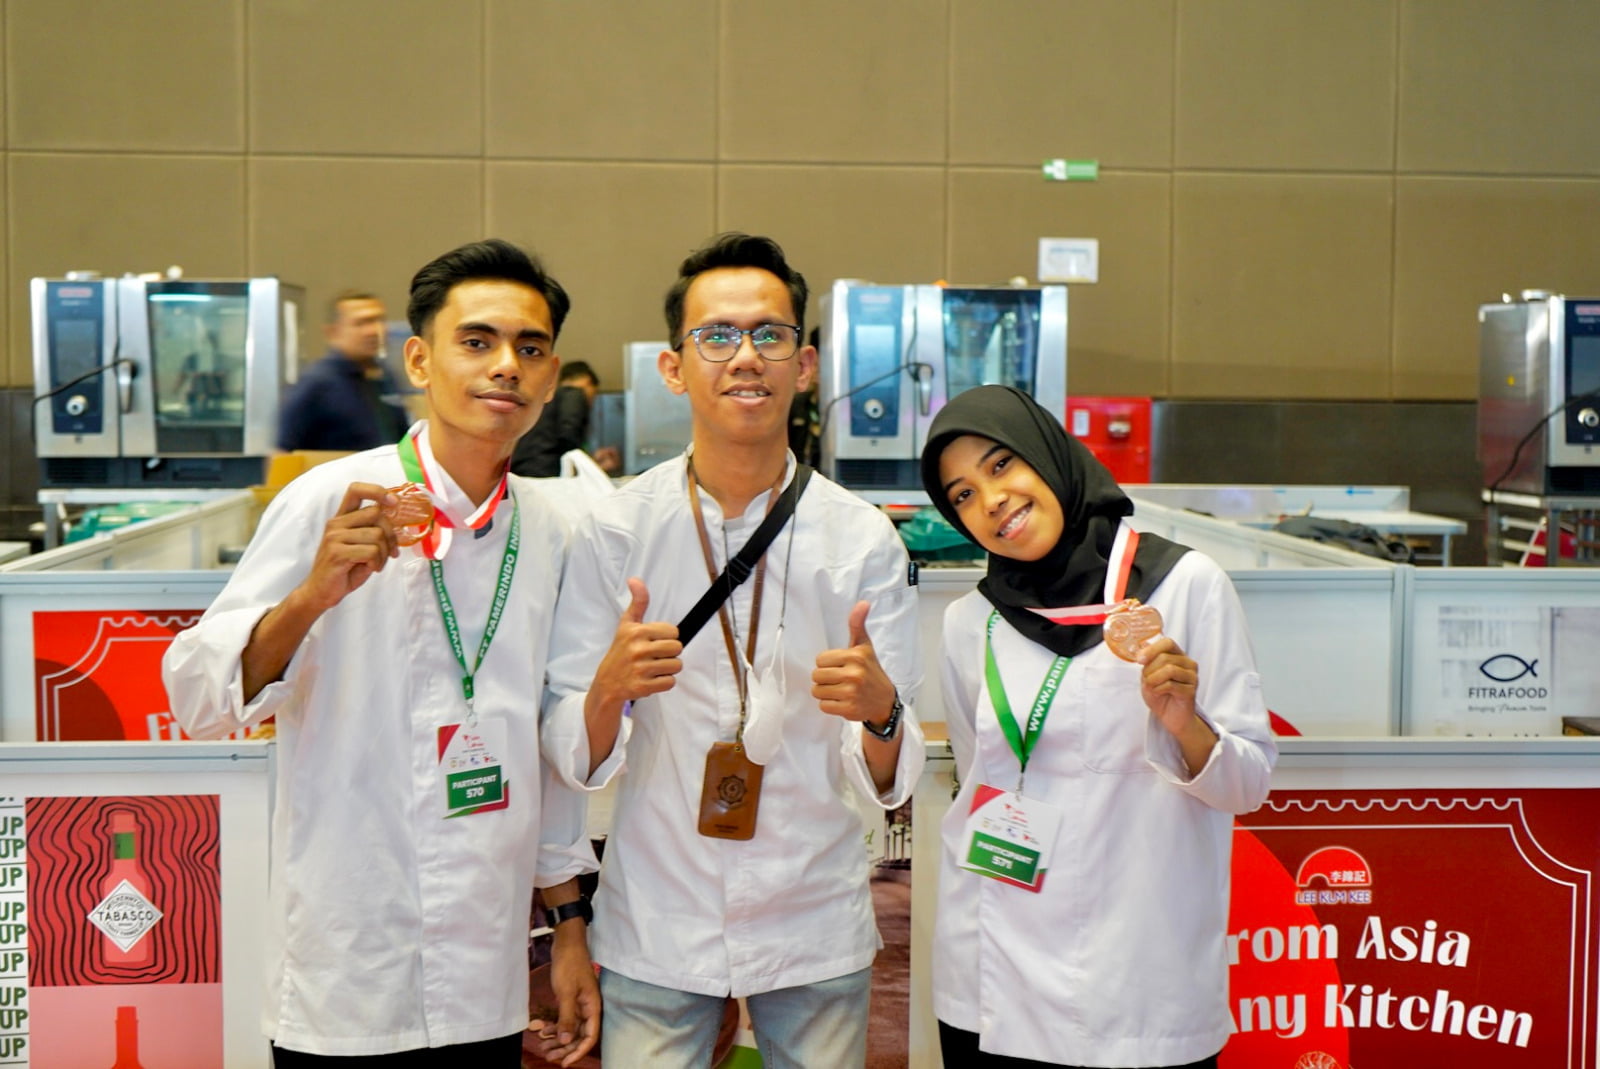 Mahasiswa poltekpar yang mengikuti ajak kompetisi lomba masak di jakarta